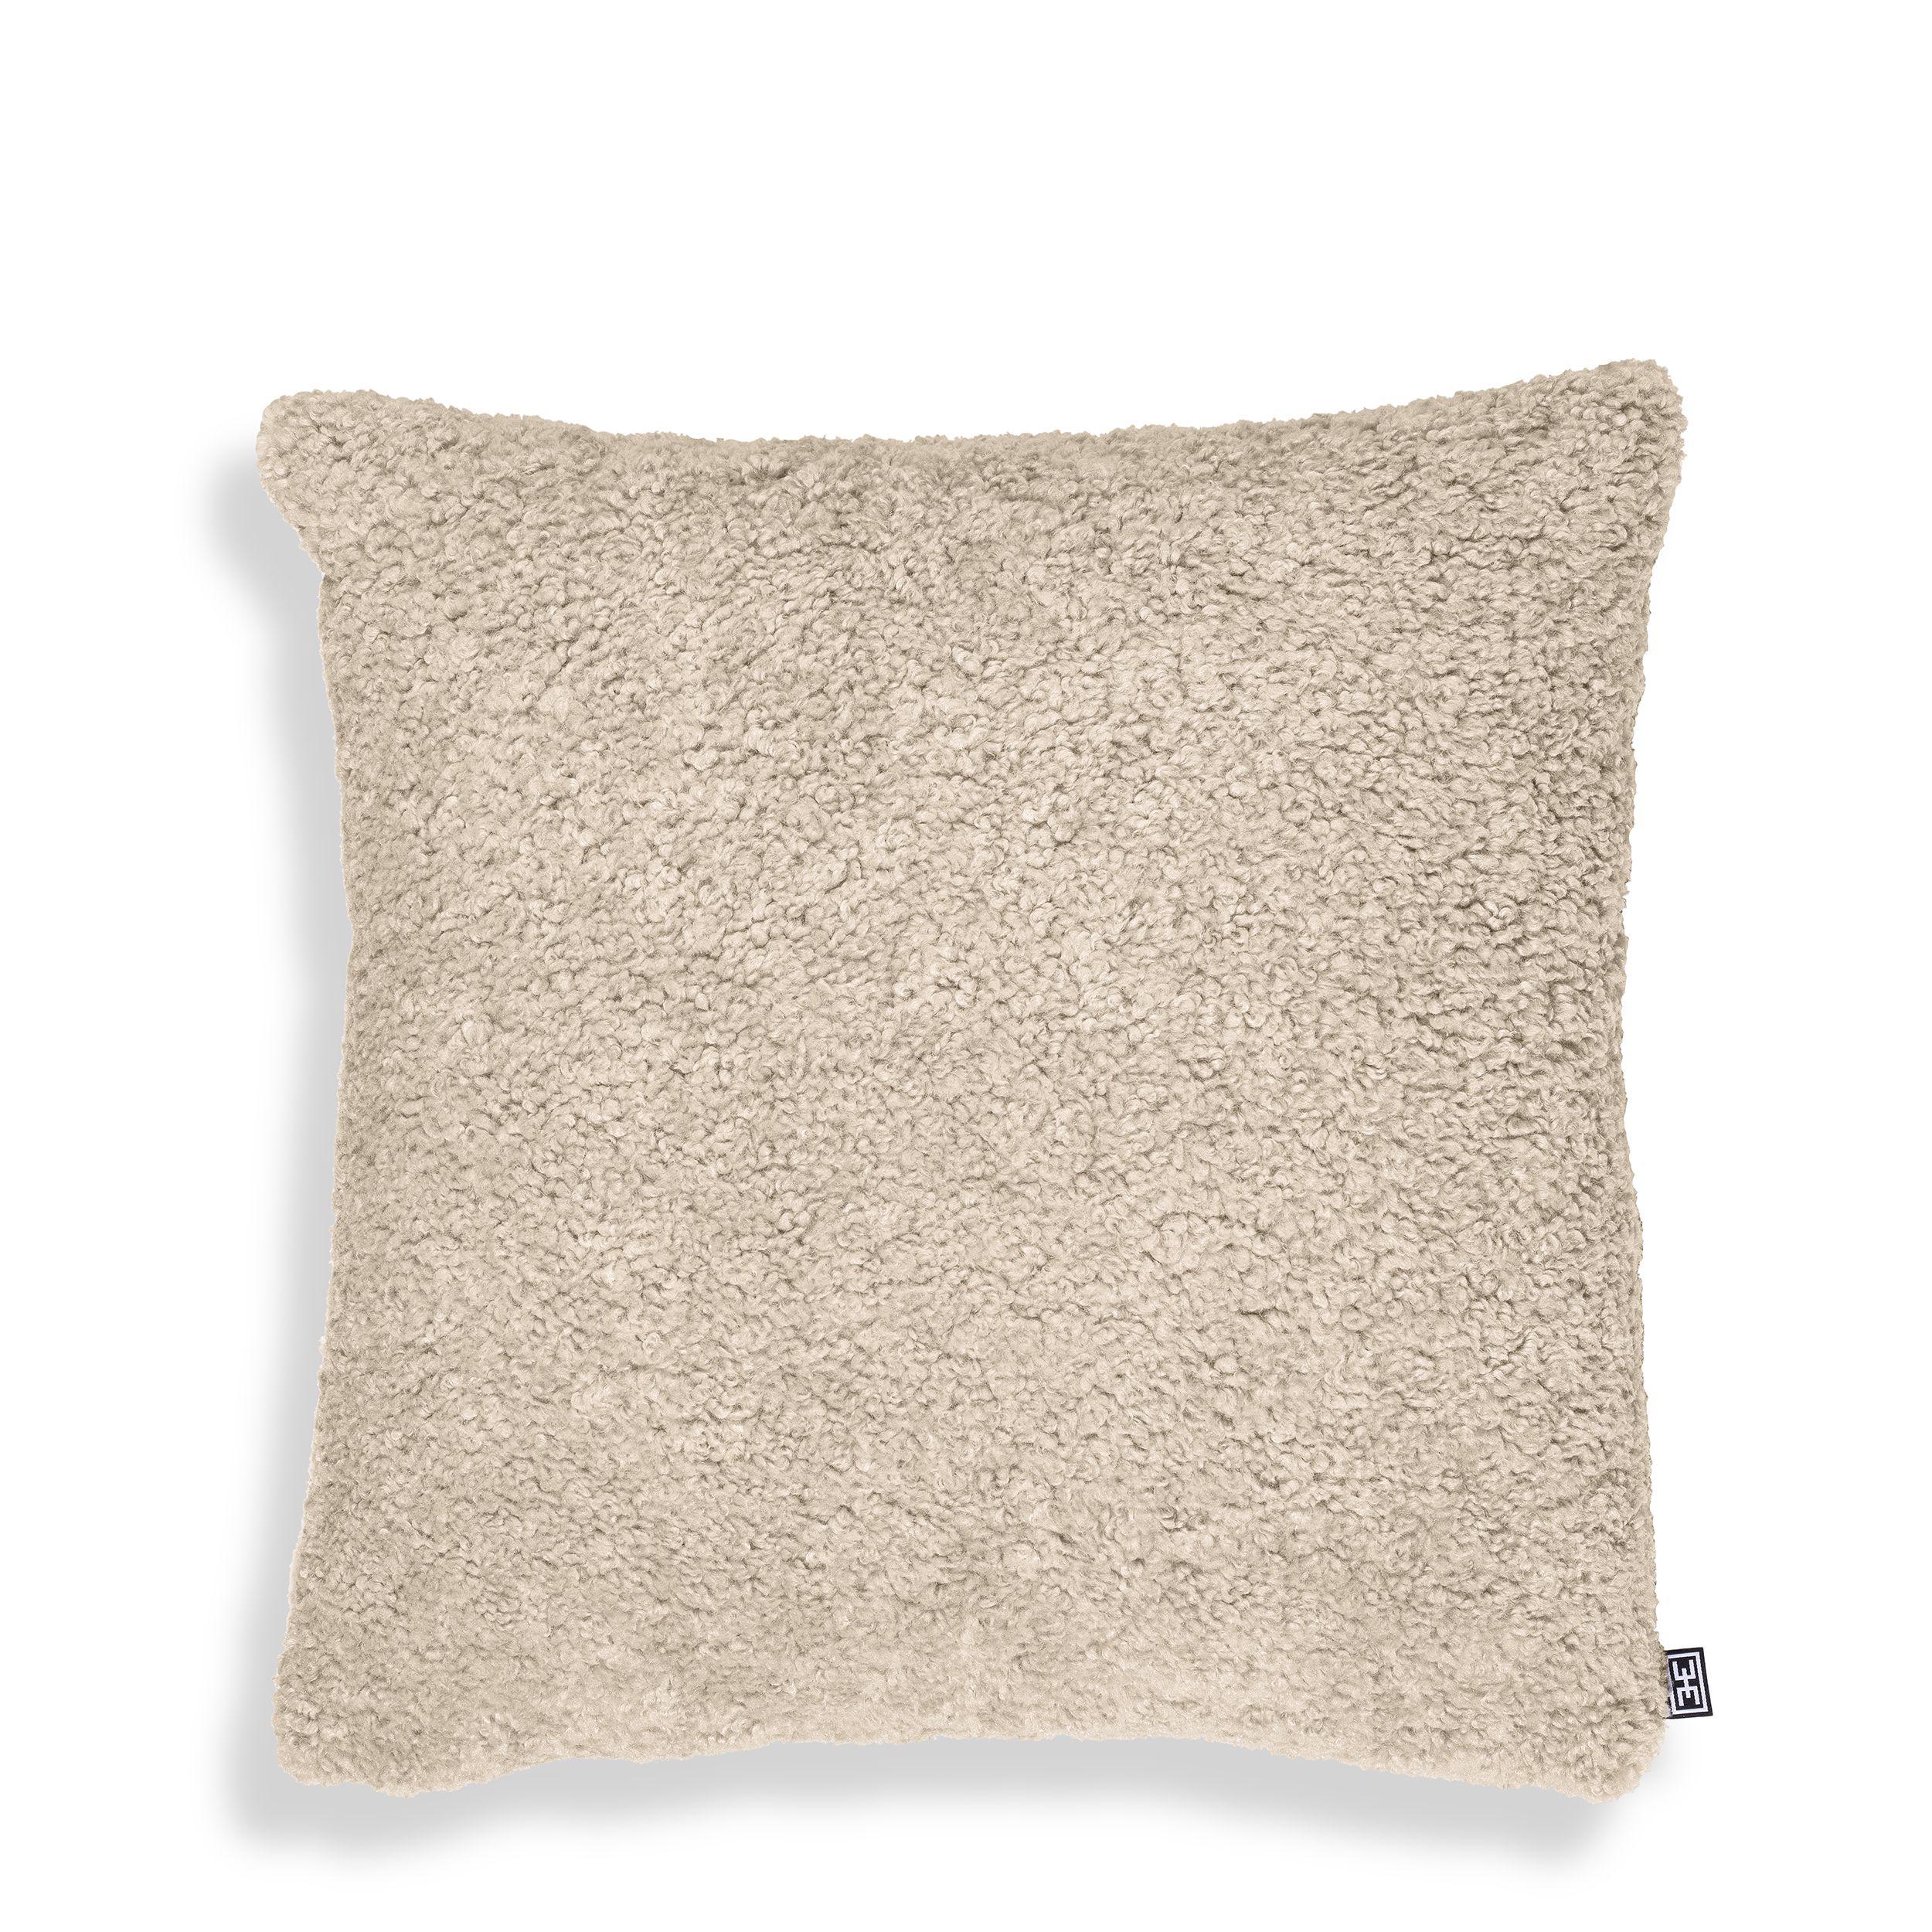 Купить Декоративная подушка Cushion Canberra в интернет-магазине roooms.ru